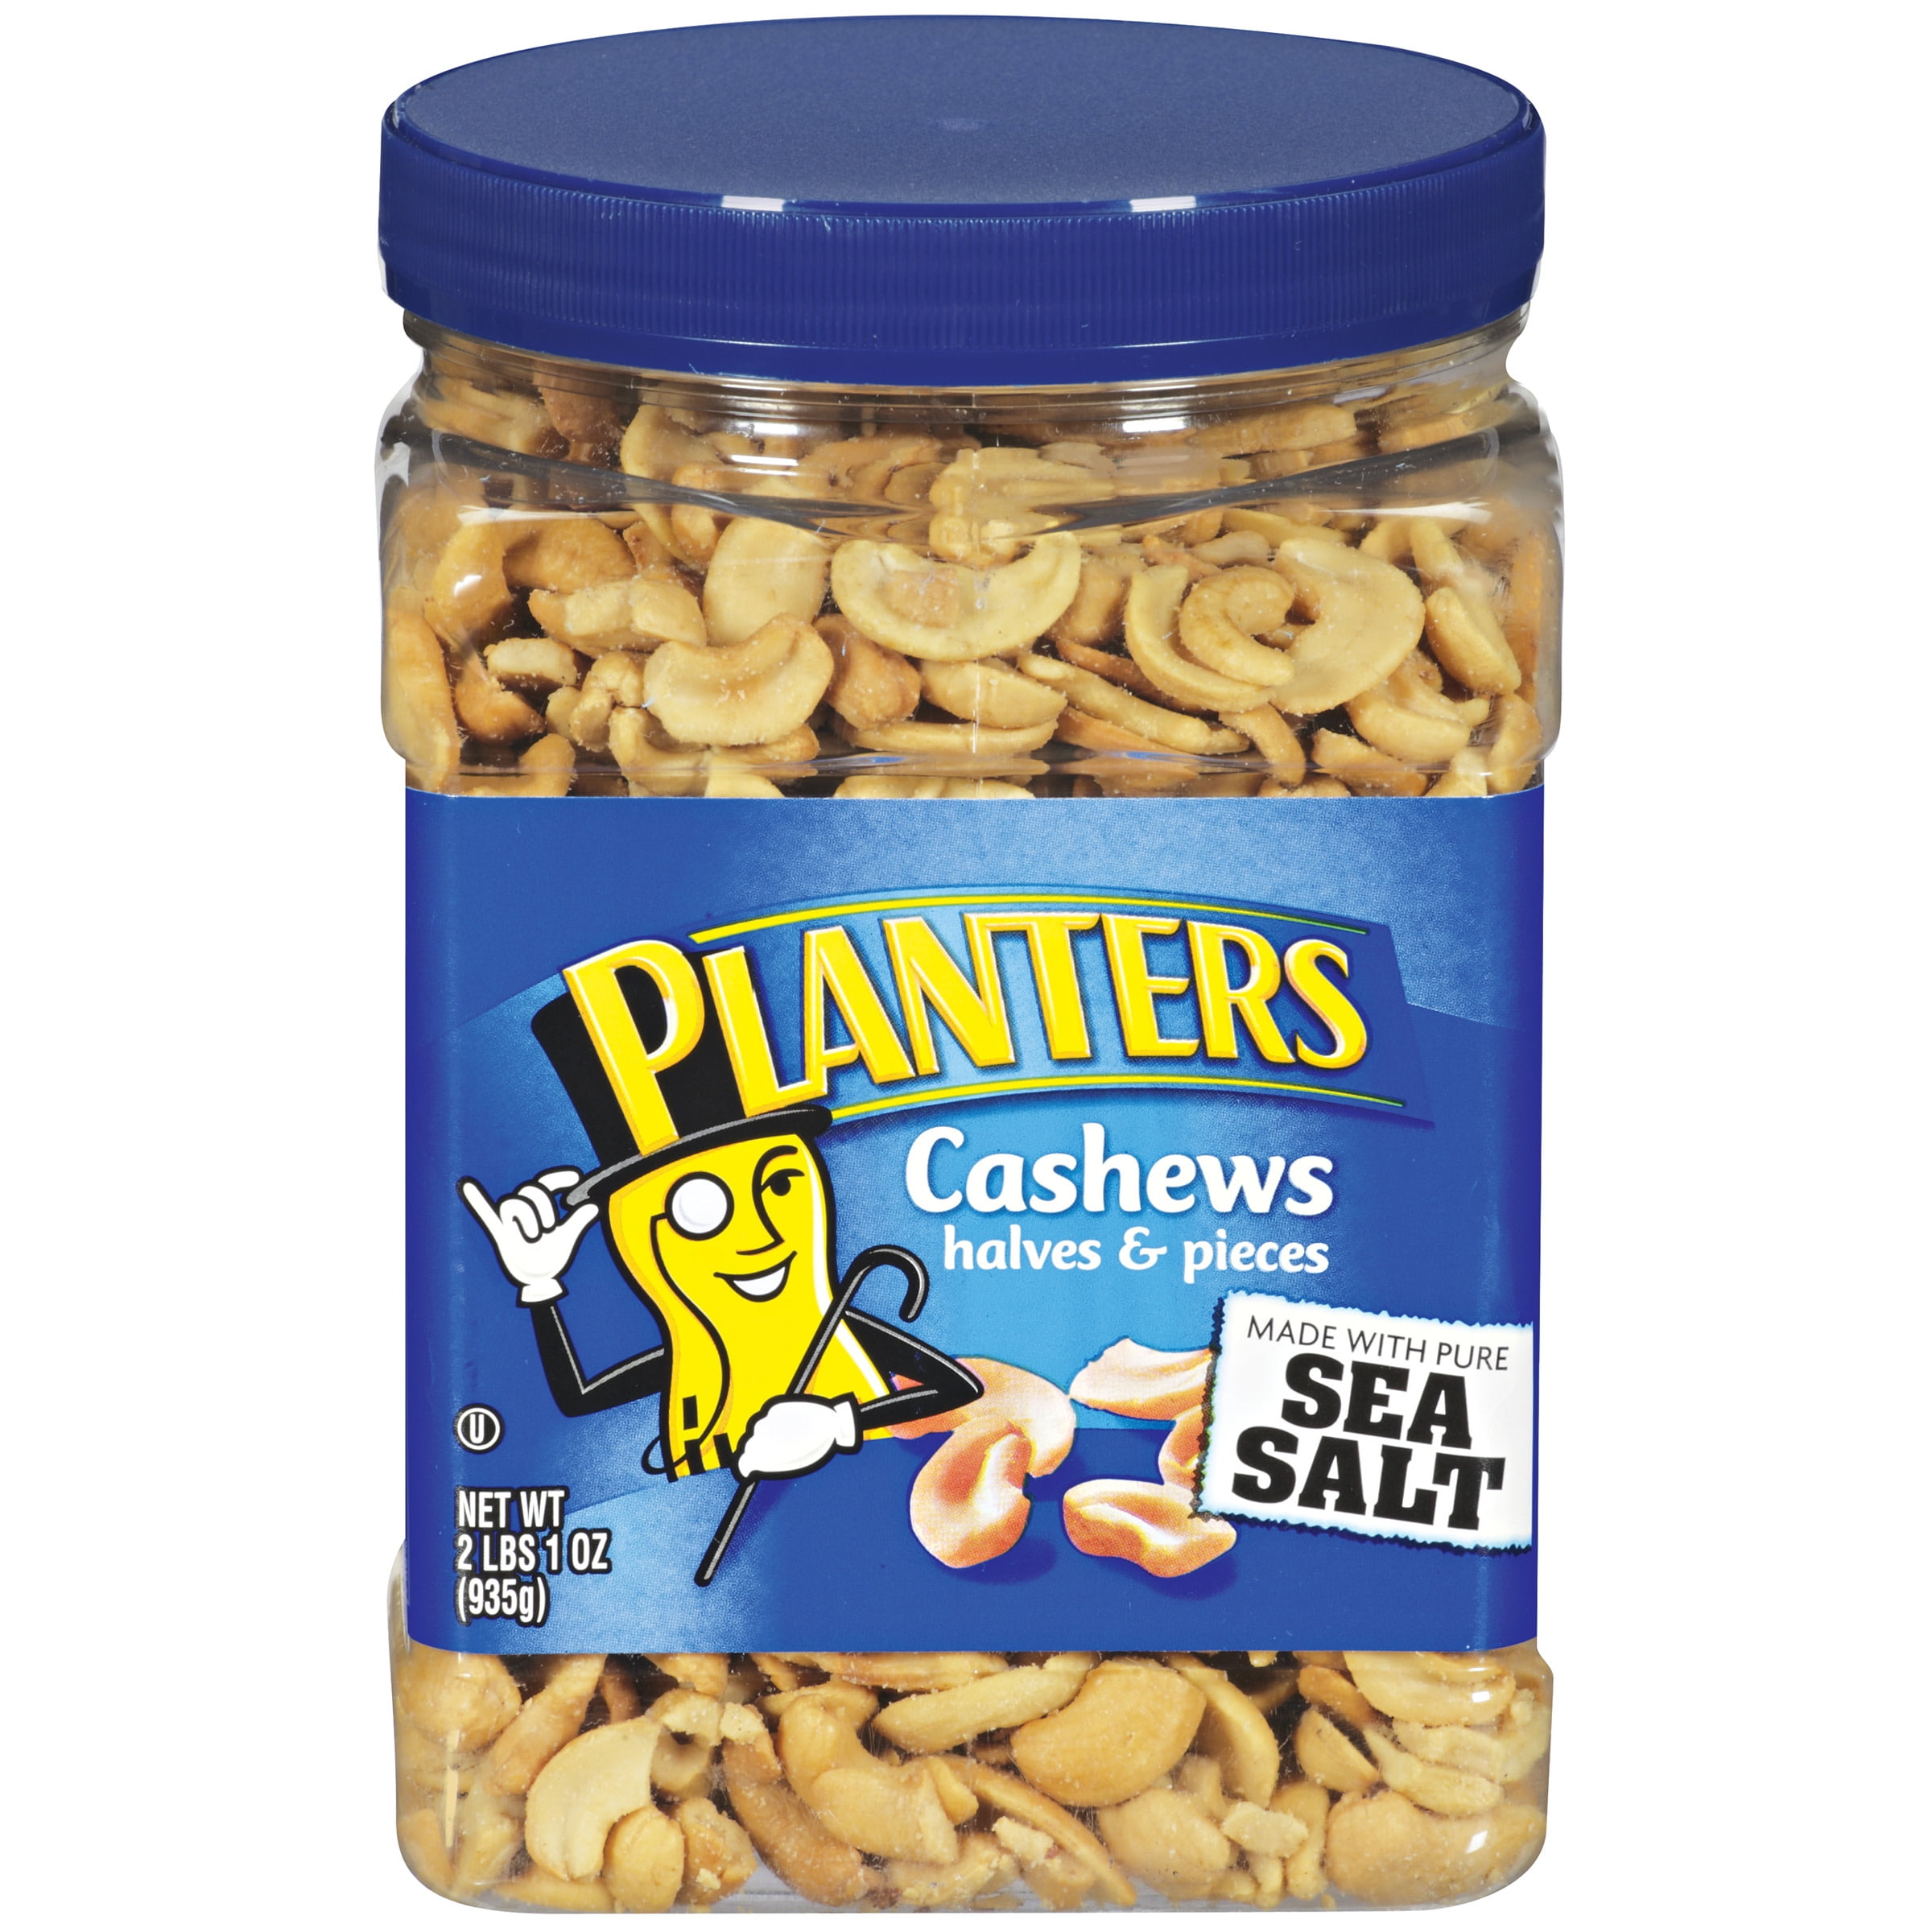 Planters Cashews Halves & Pieces, 1.63 lb Container